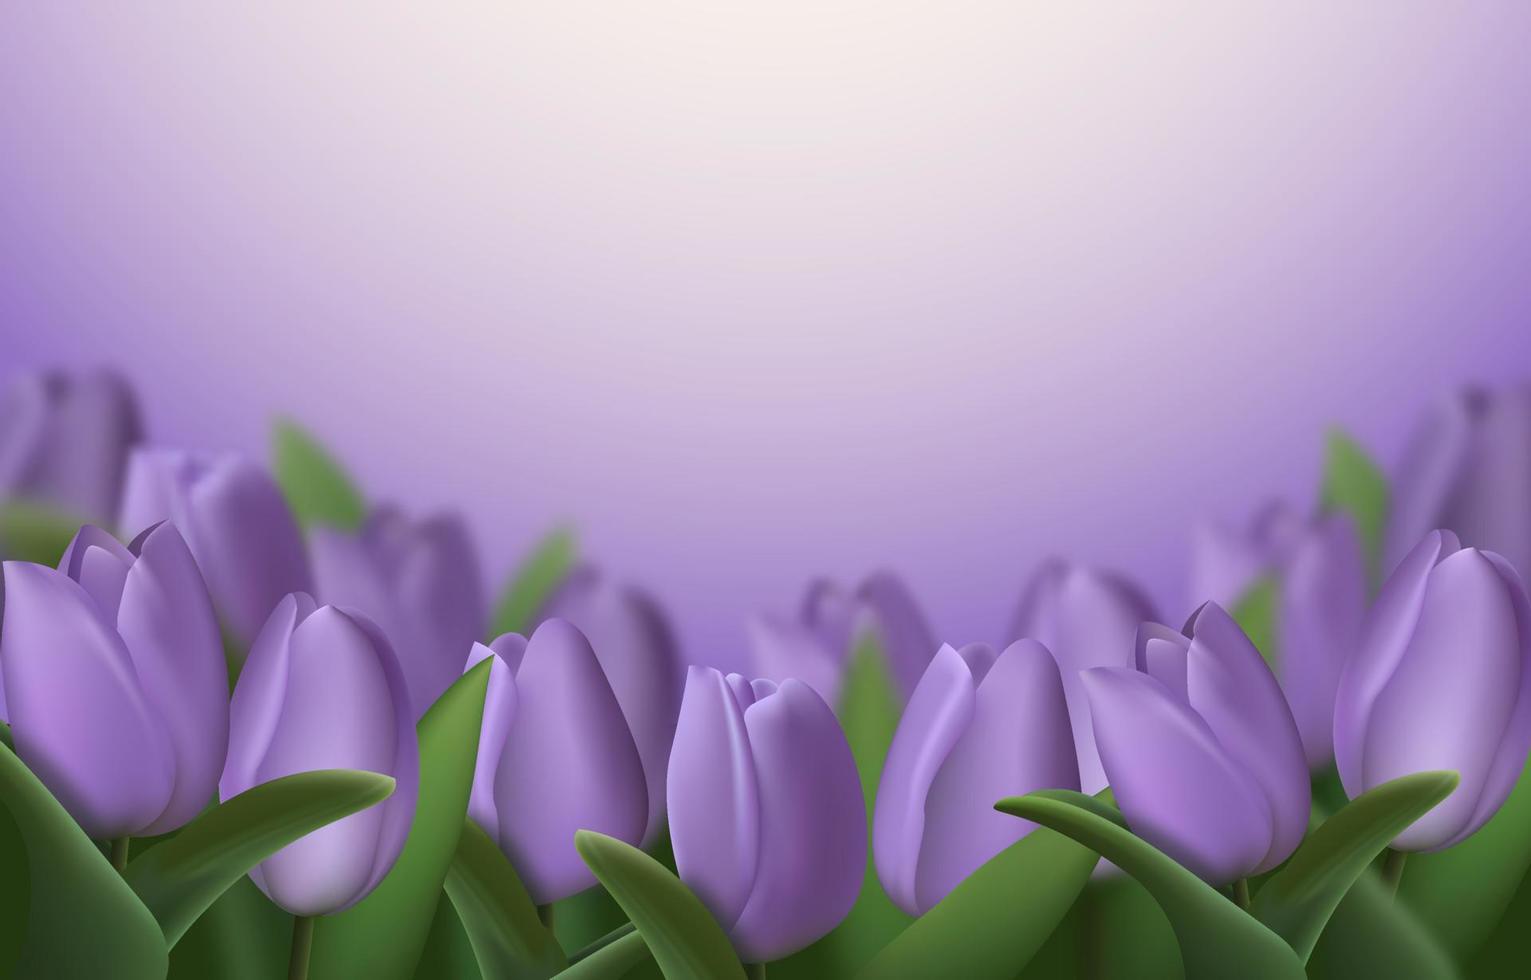 fiori di tulipano 3d realistici su sfondo viola. illustrazione vettoriale